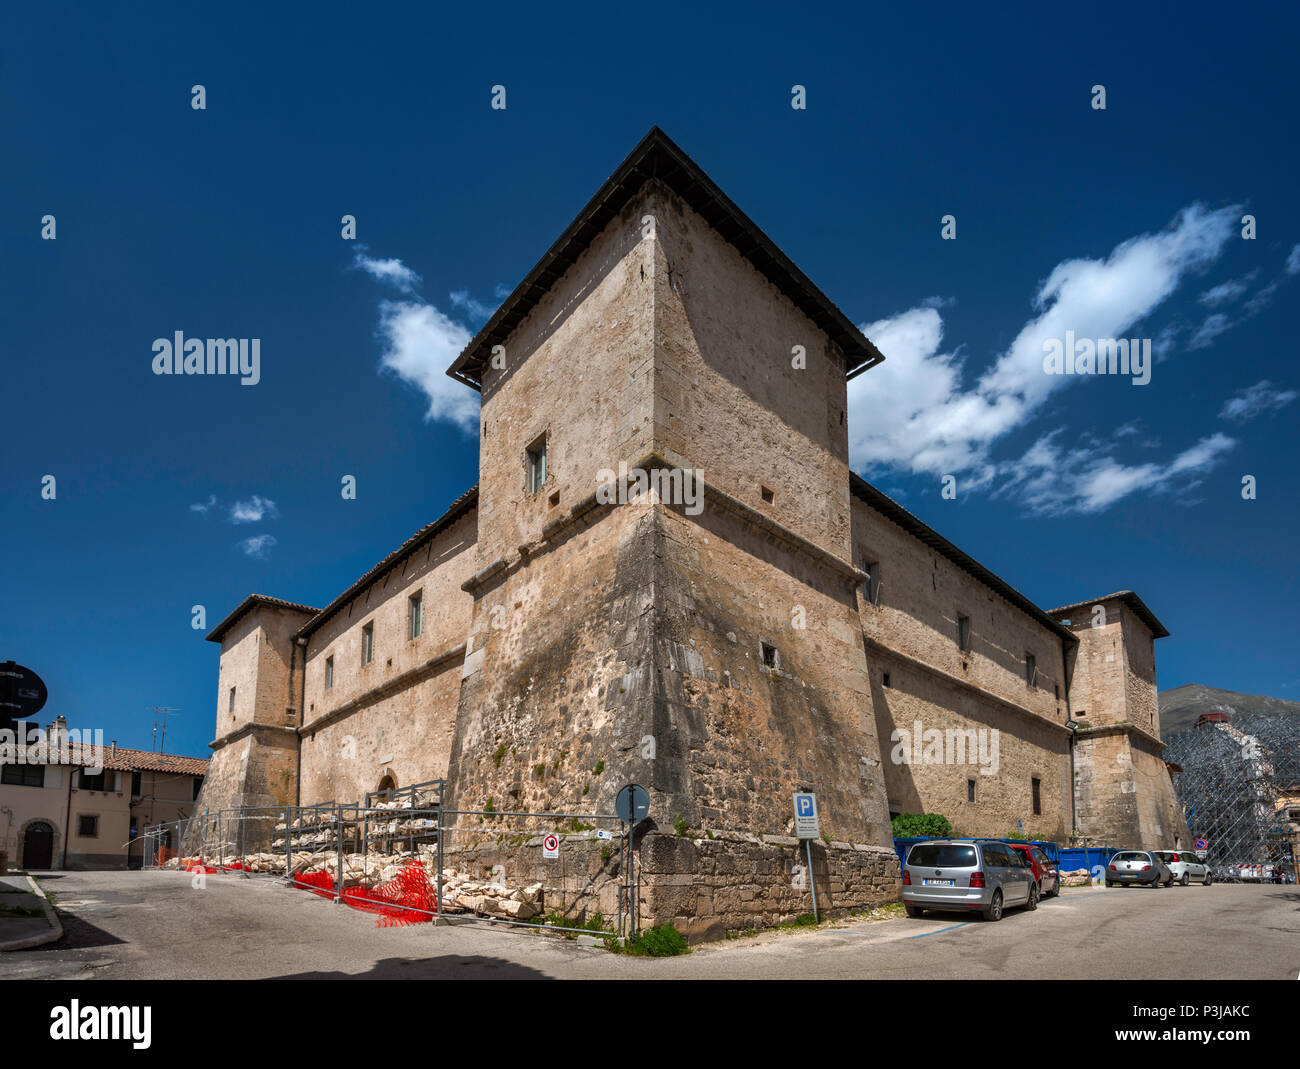 Castellina, XVI secolo fortezza, intatta dopo i terremoti in ottobre 2016, a Norcia in Umbria, Italia Foto Stock